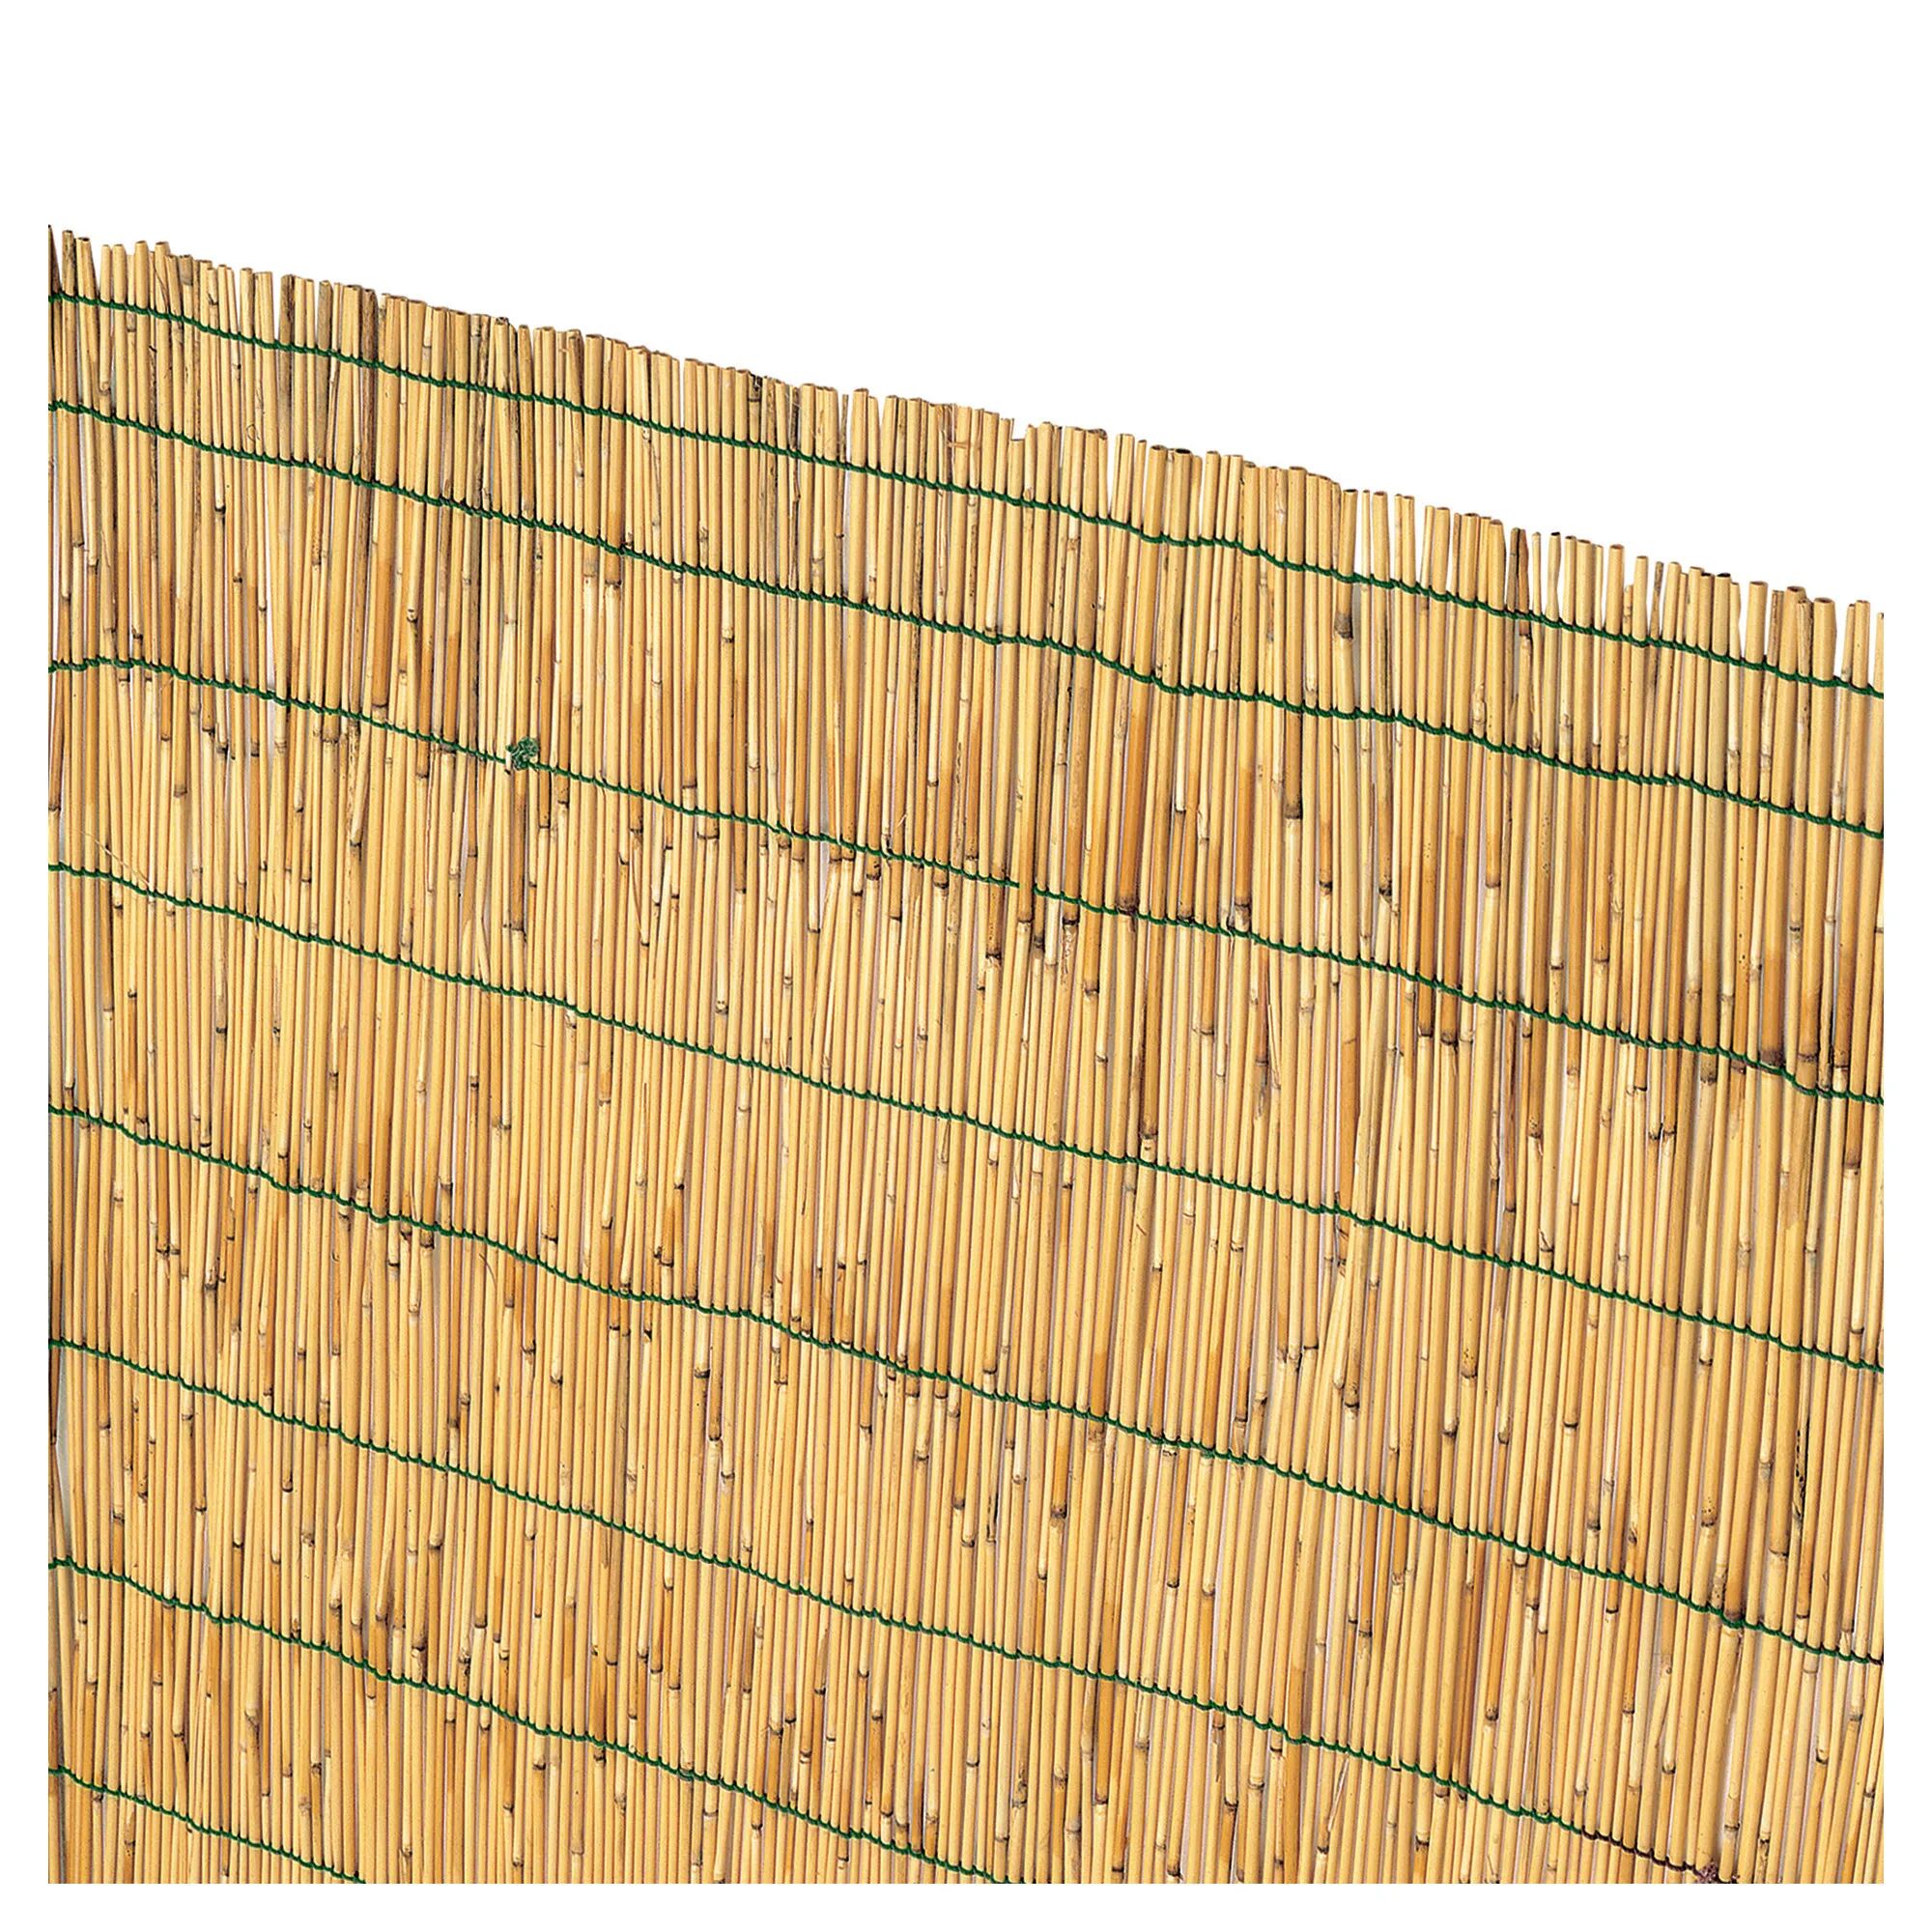 tecnomat arella in cannette di bambu' pelato 2x5m Ø circa 4-5 mm con filo nylon prodotto naturale